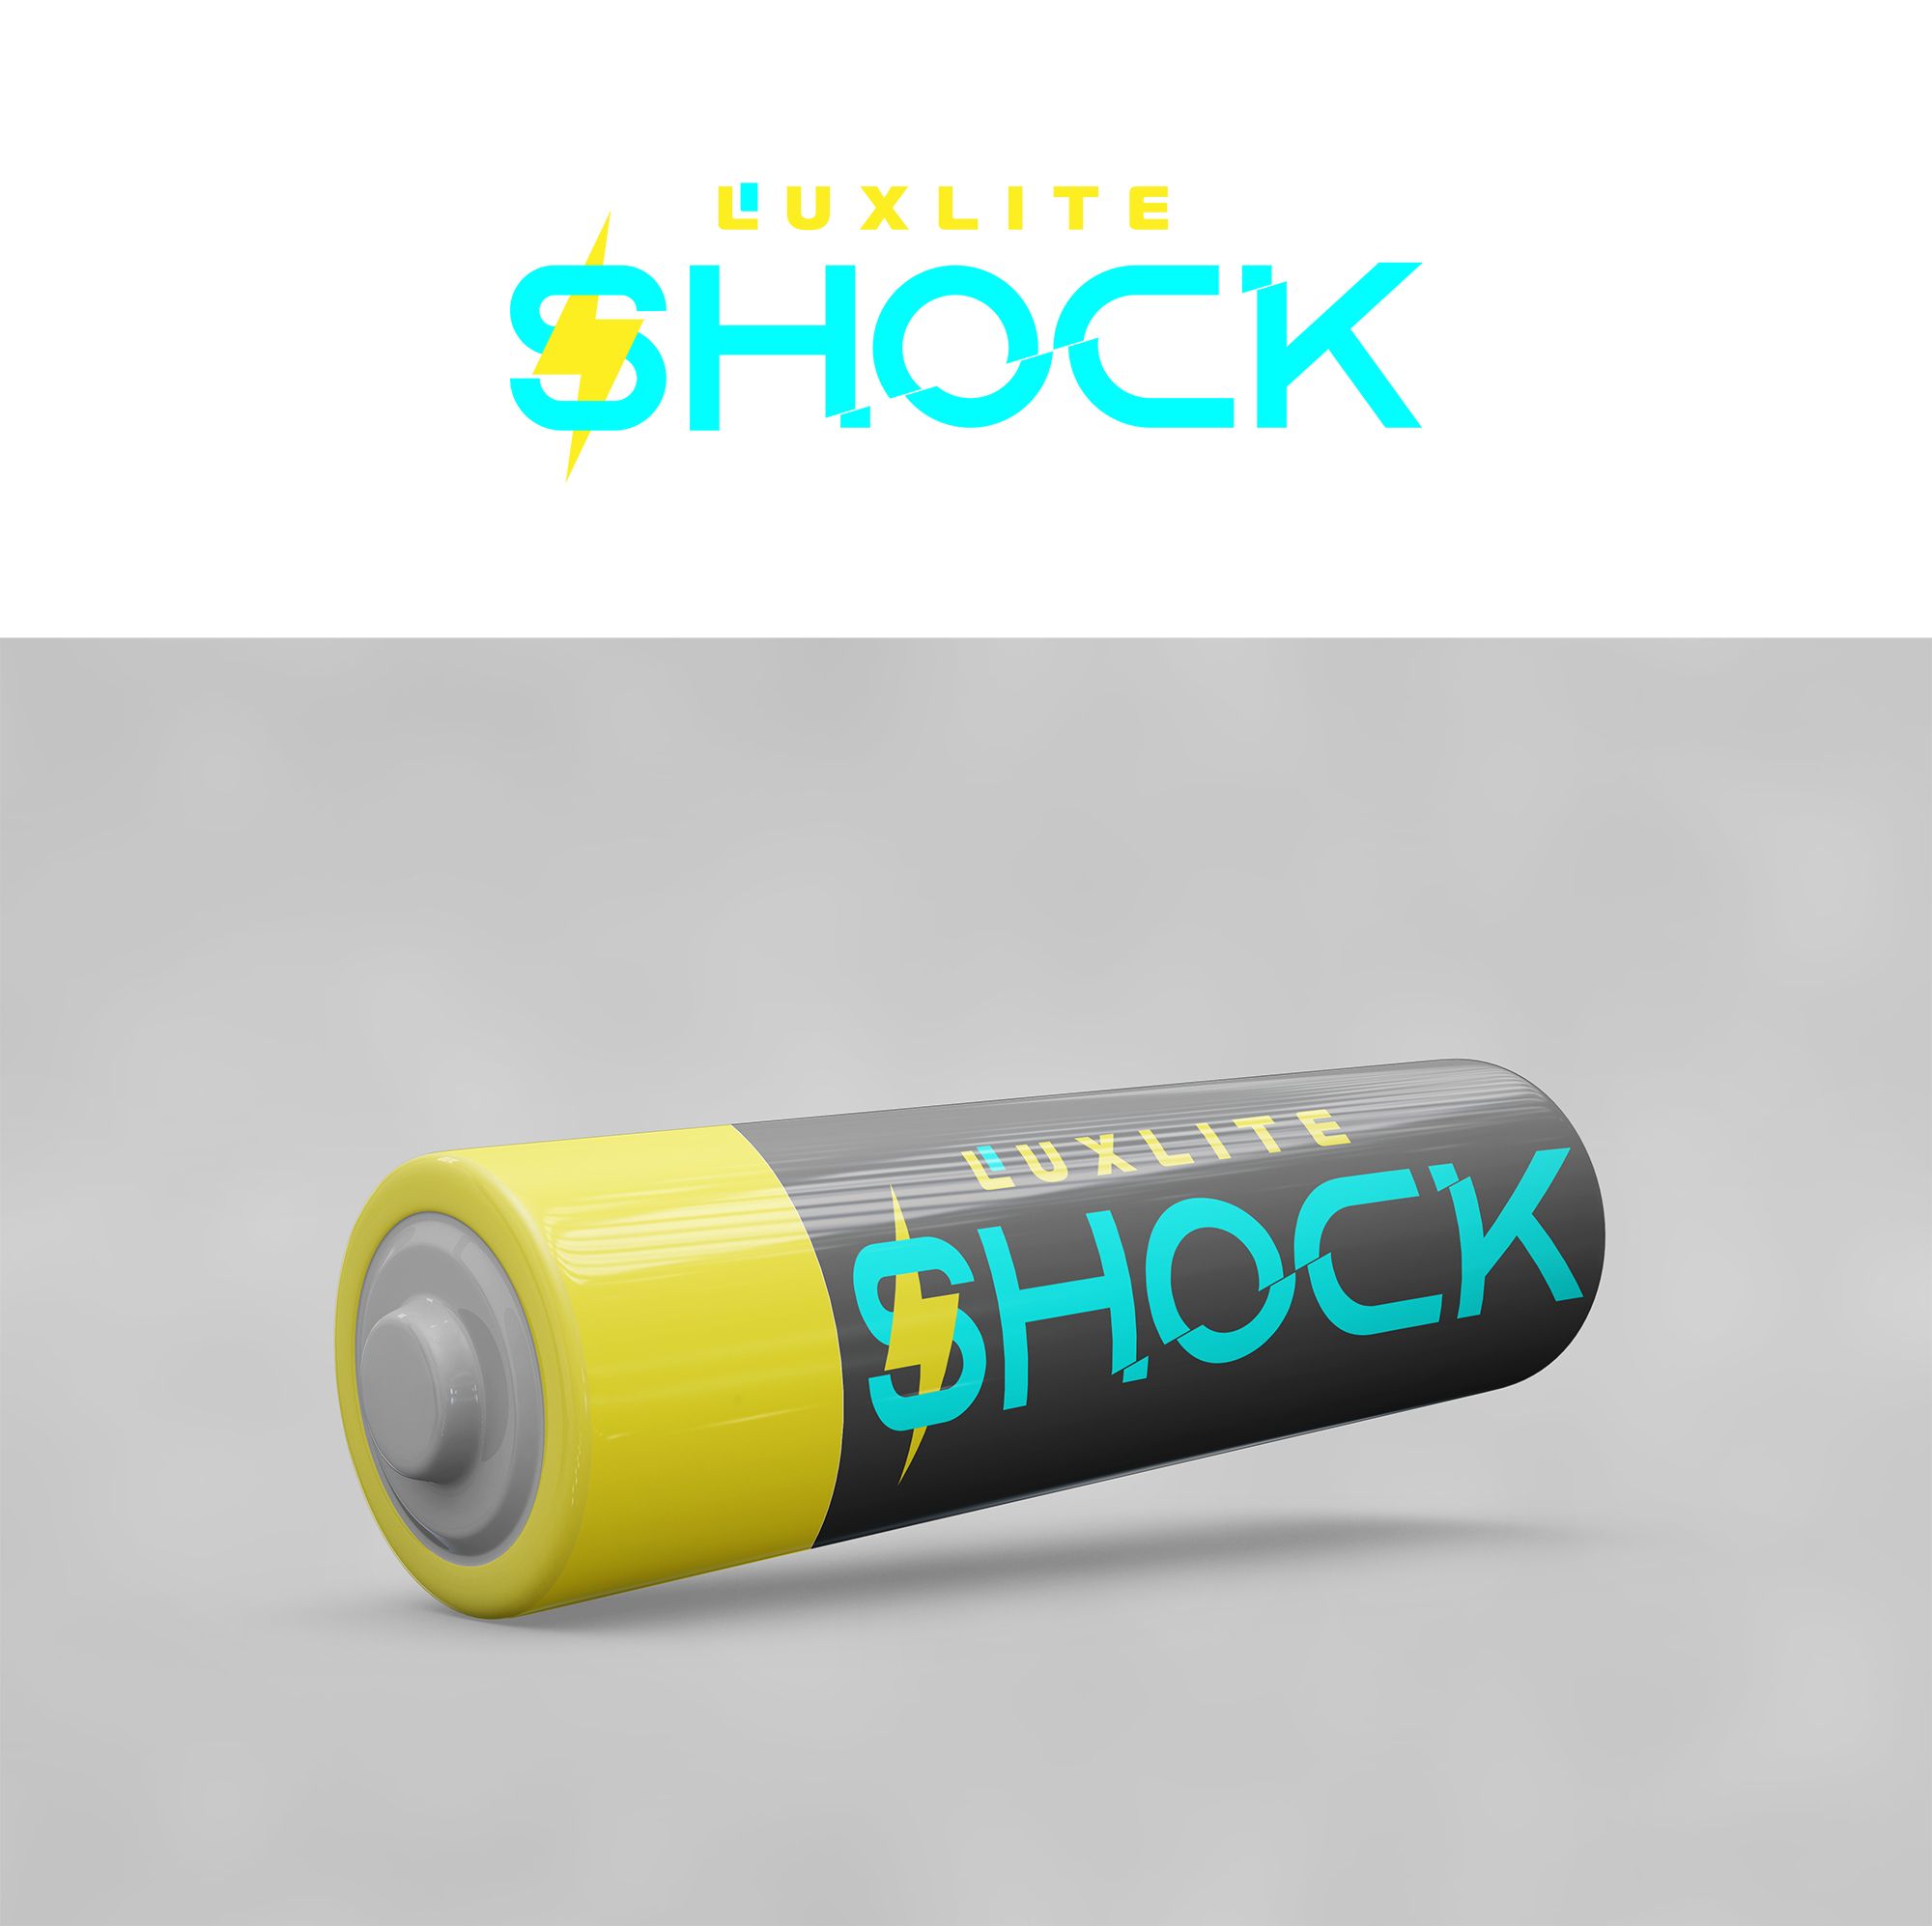 Логотип для батареек LUXLITE SHOCK - дизайнер vell21